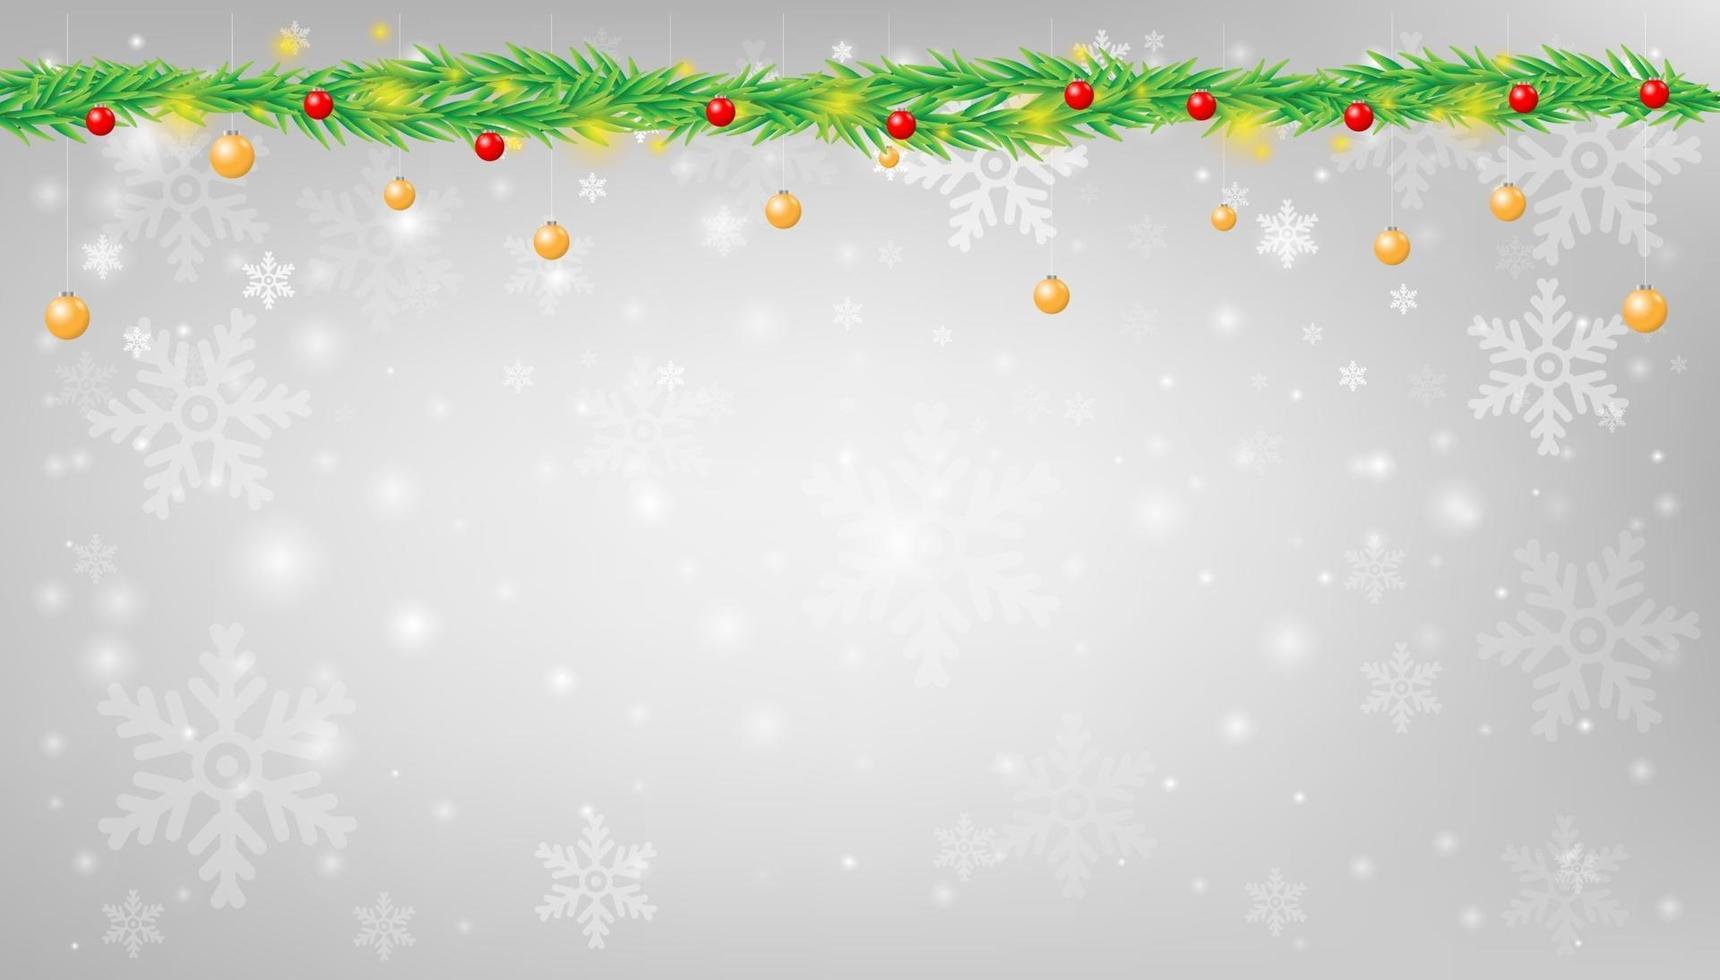 Schneeflocke mit Weihnachtsgirlandenhintergrund-Vektorillustration vektor